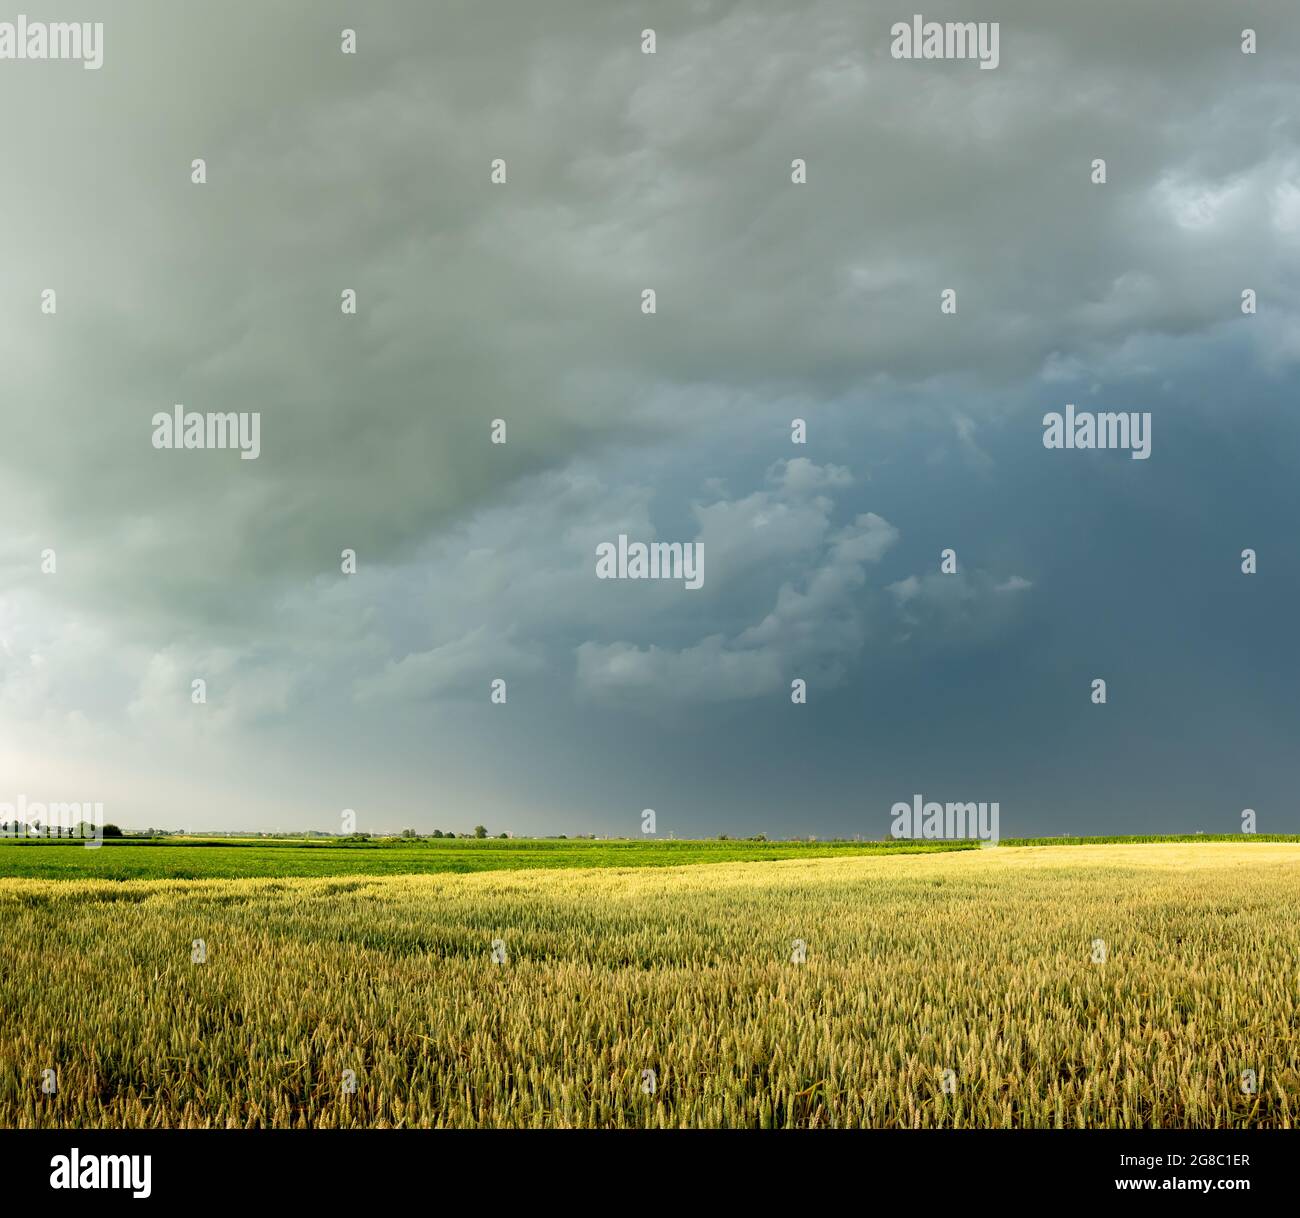 Dunkle Sturmwolken sammeln sich über den Getreidefeldern. Foto aufgenommen bei Tageslicht. Stockfoto